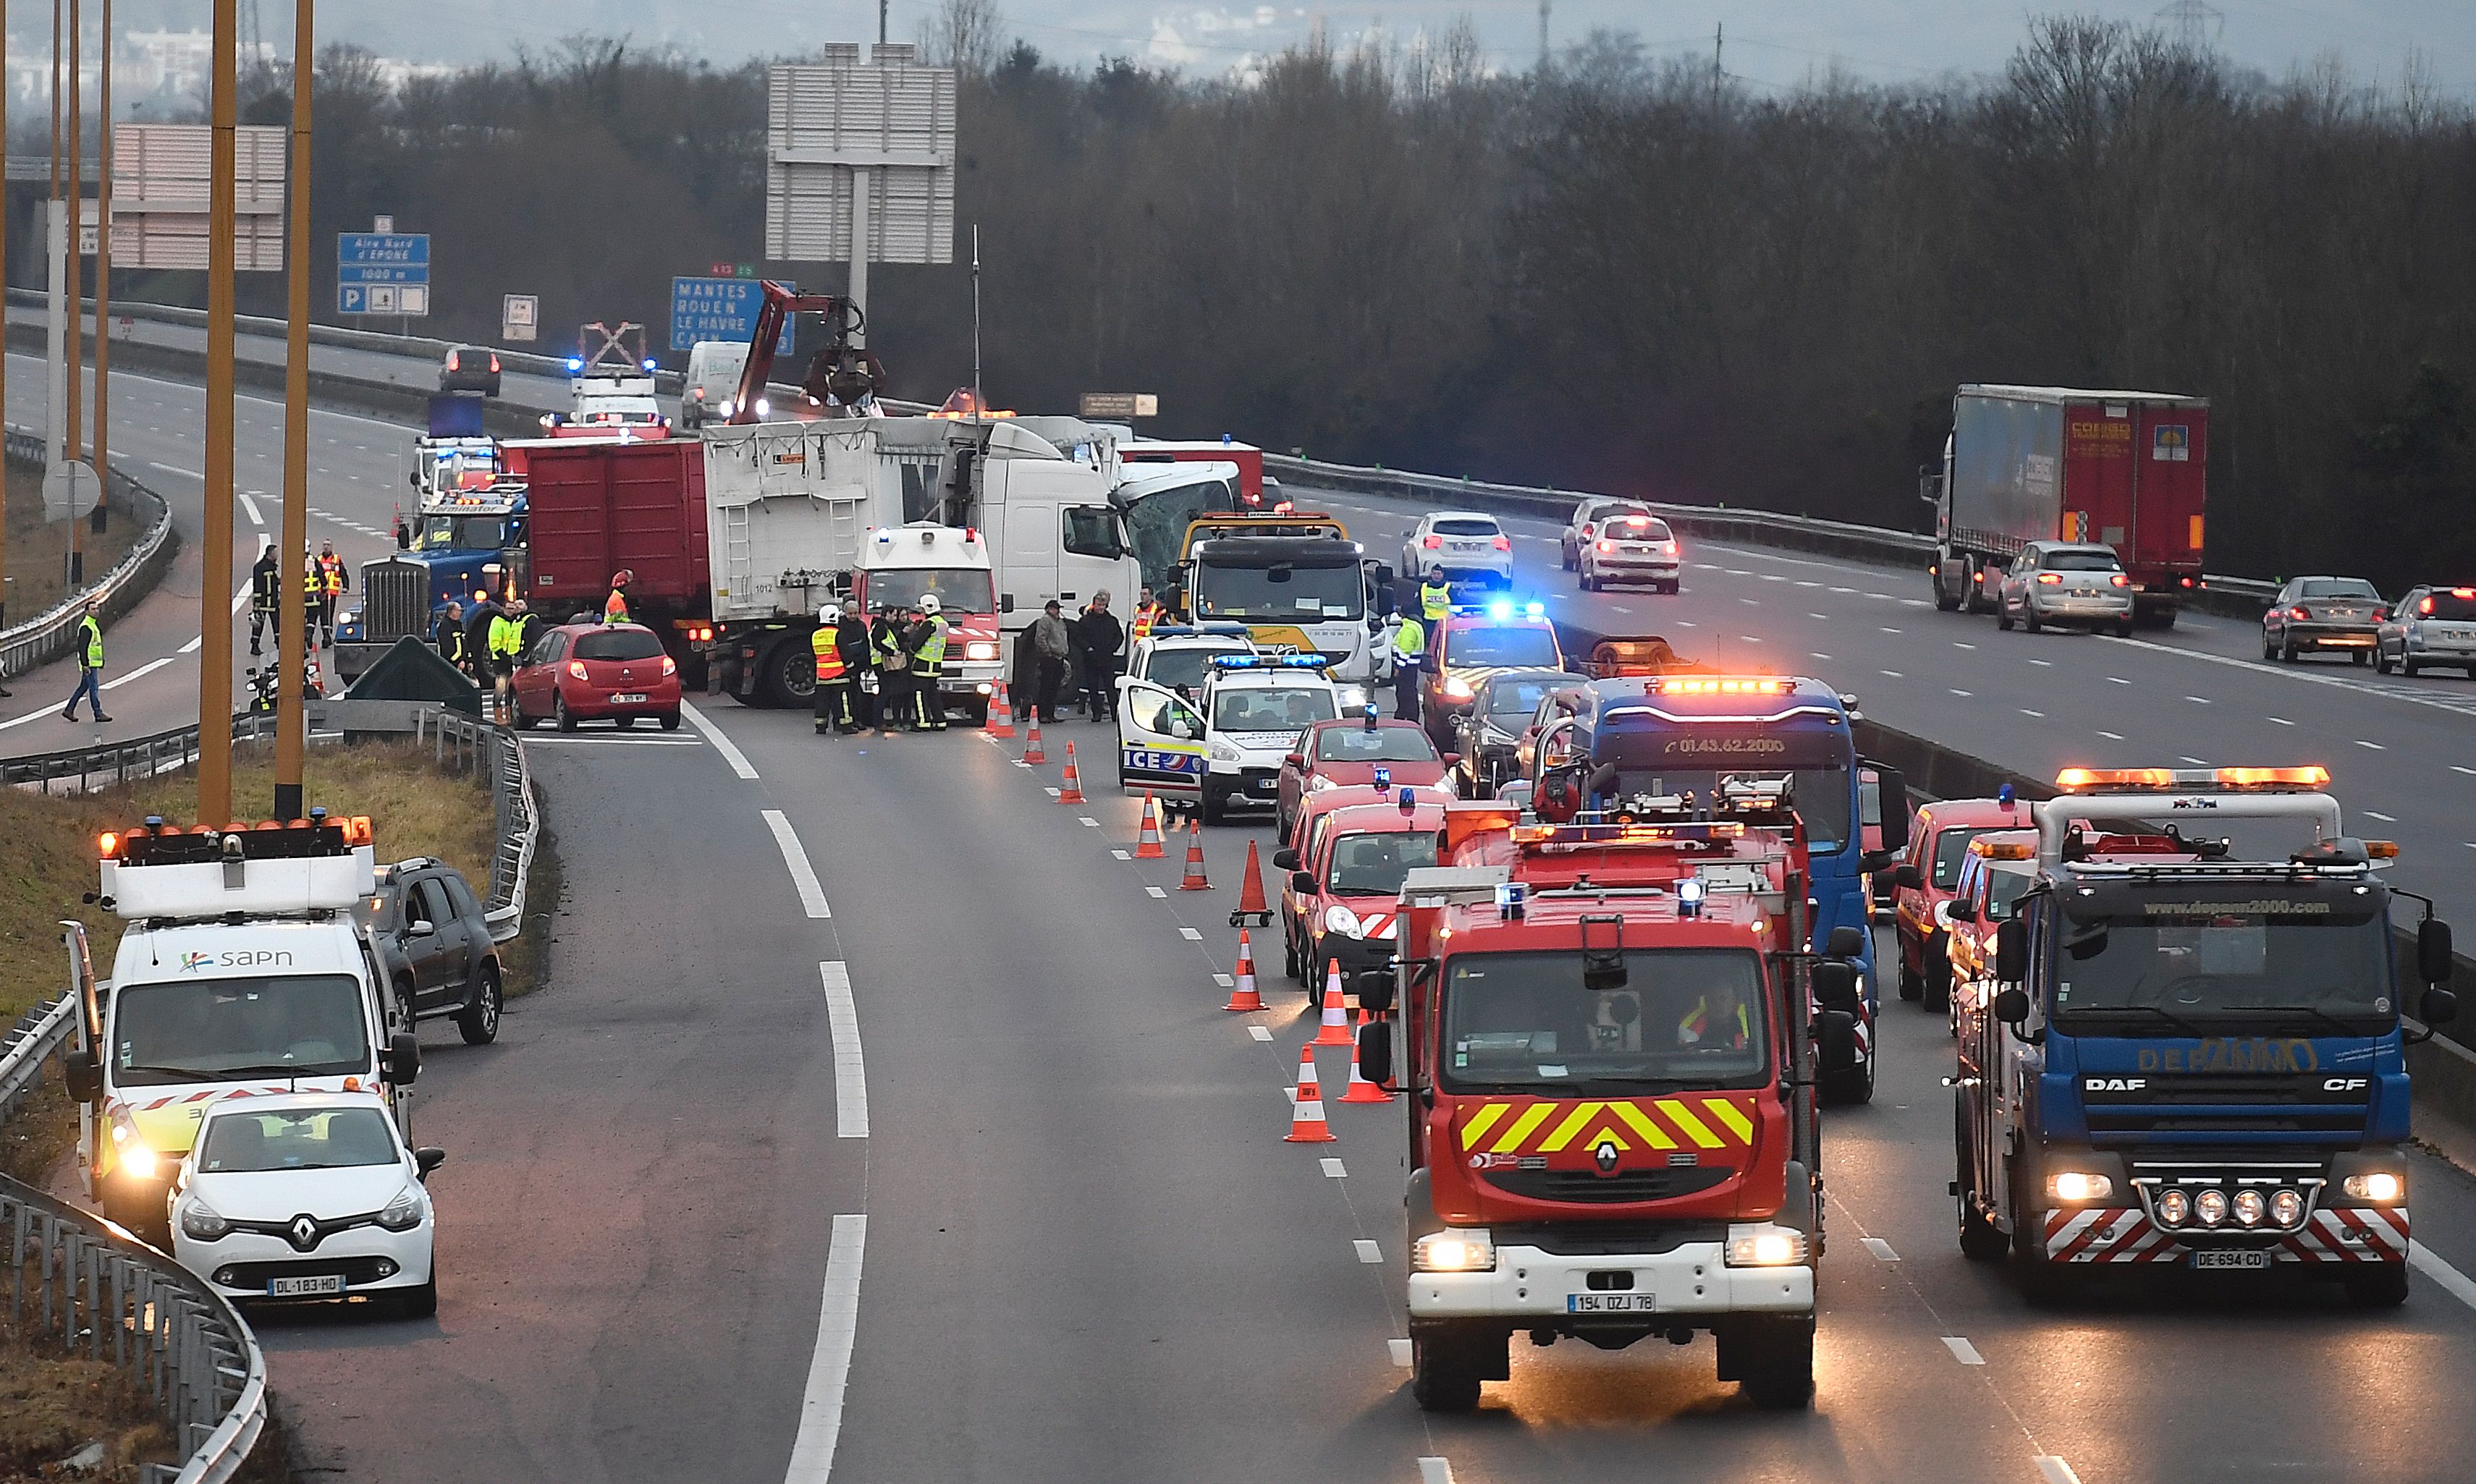 حادث تصادم كبير على الطريق السريع فى جنوب غرب باريس